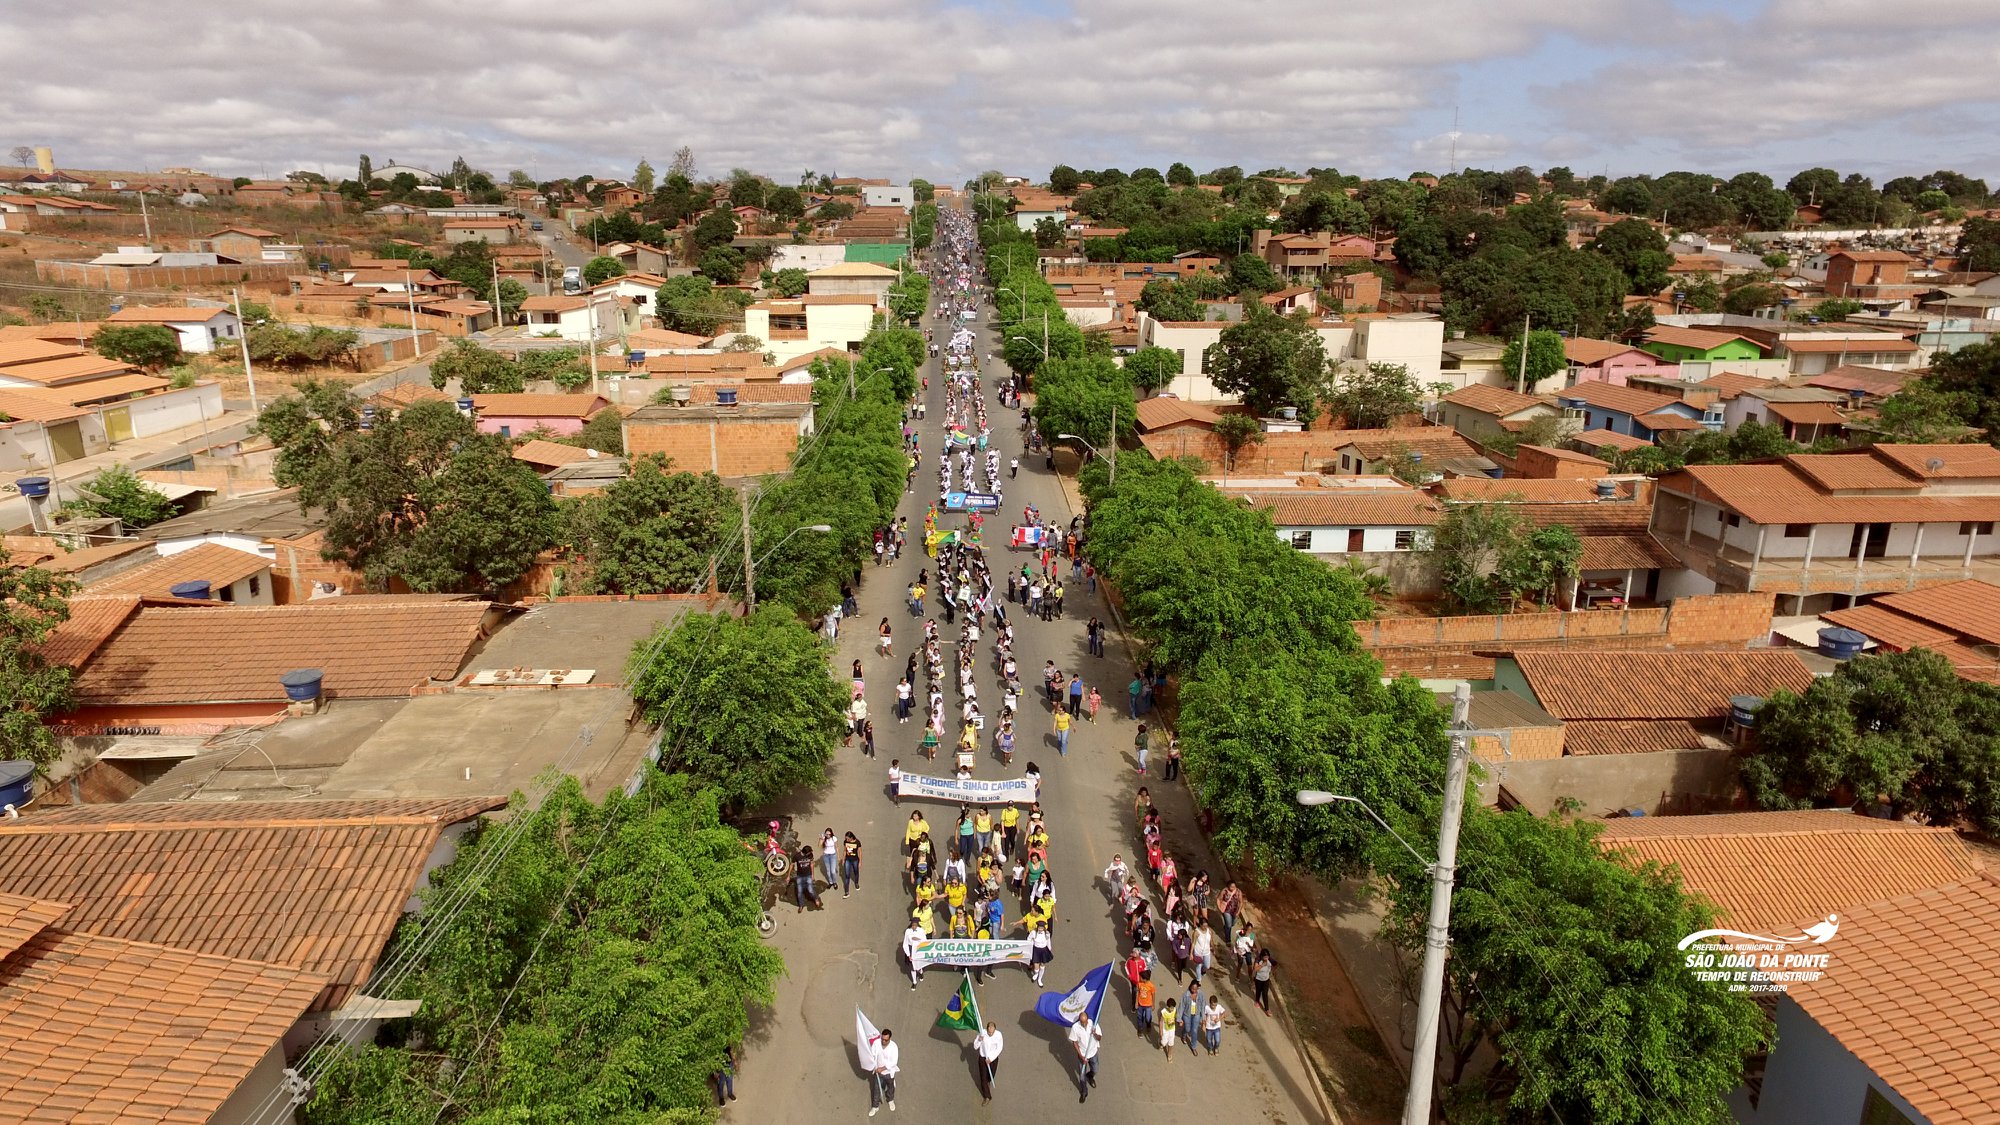 Desfile Cívico – “Gigante por Natureza”